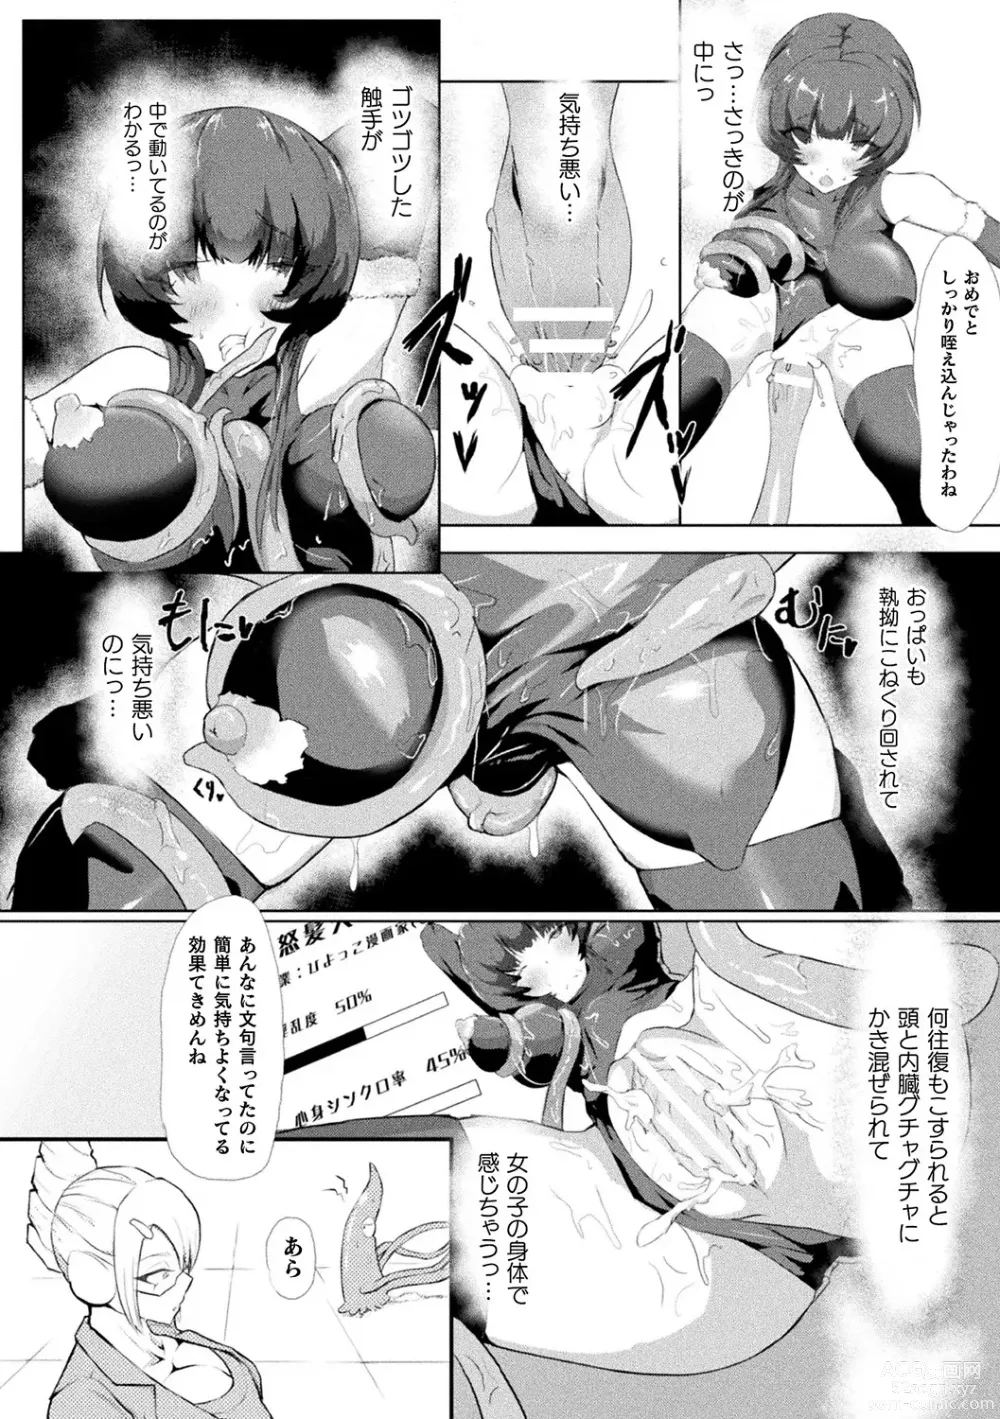 Page 94 of manga Bessatsu Comic Unreal AI ni Wakaraserareru Jinrui Hen Vol. 2